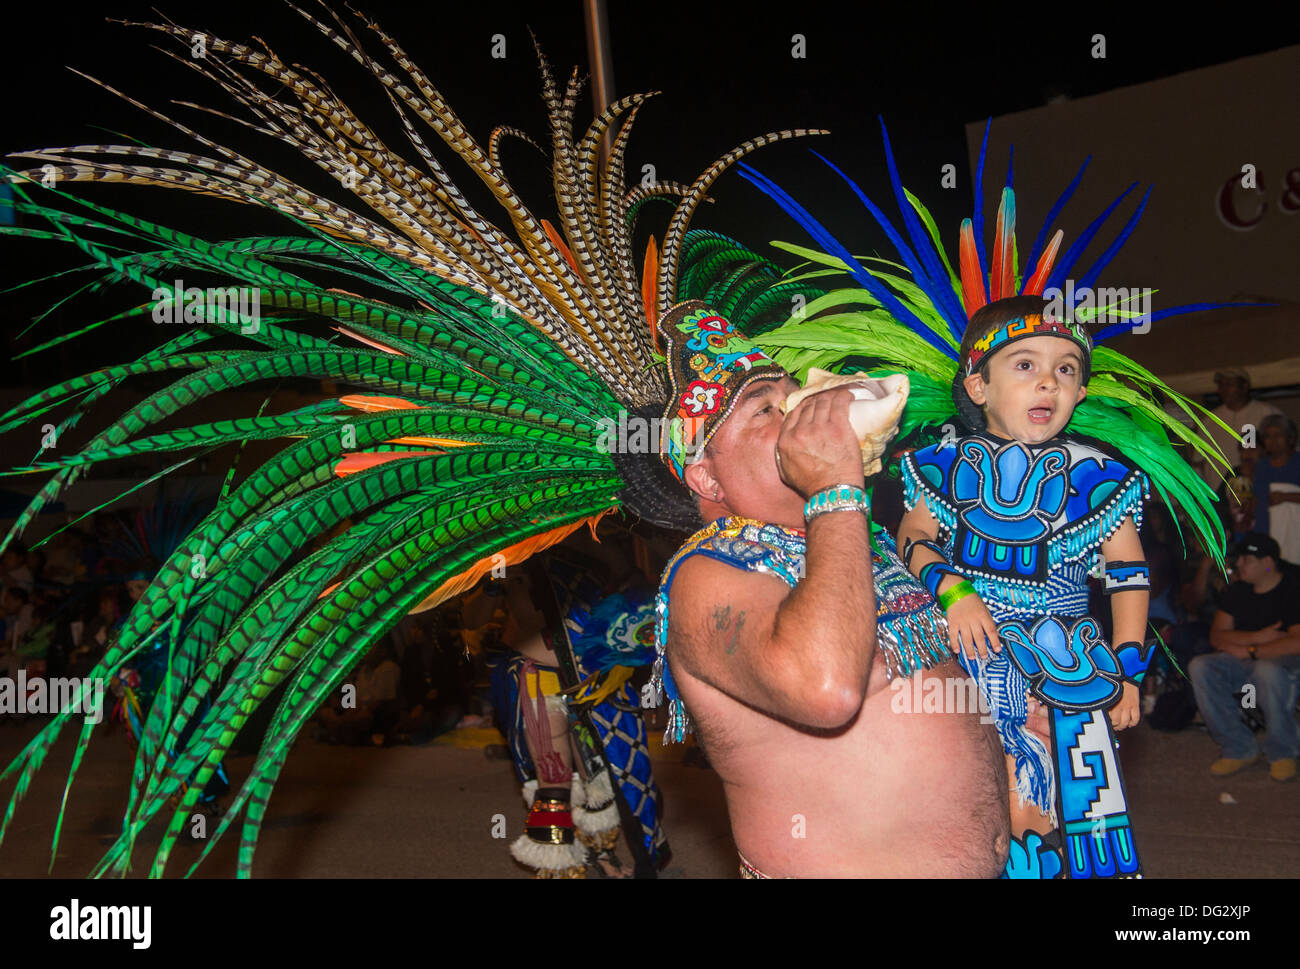 Aztekische Tänzer mit Tracht beteiligt sich an der jährlichen Inter-tribal zeremonielle Nacht Parade in Gallup New-Mexico Stockfoto